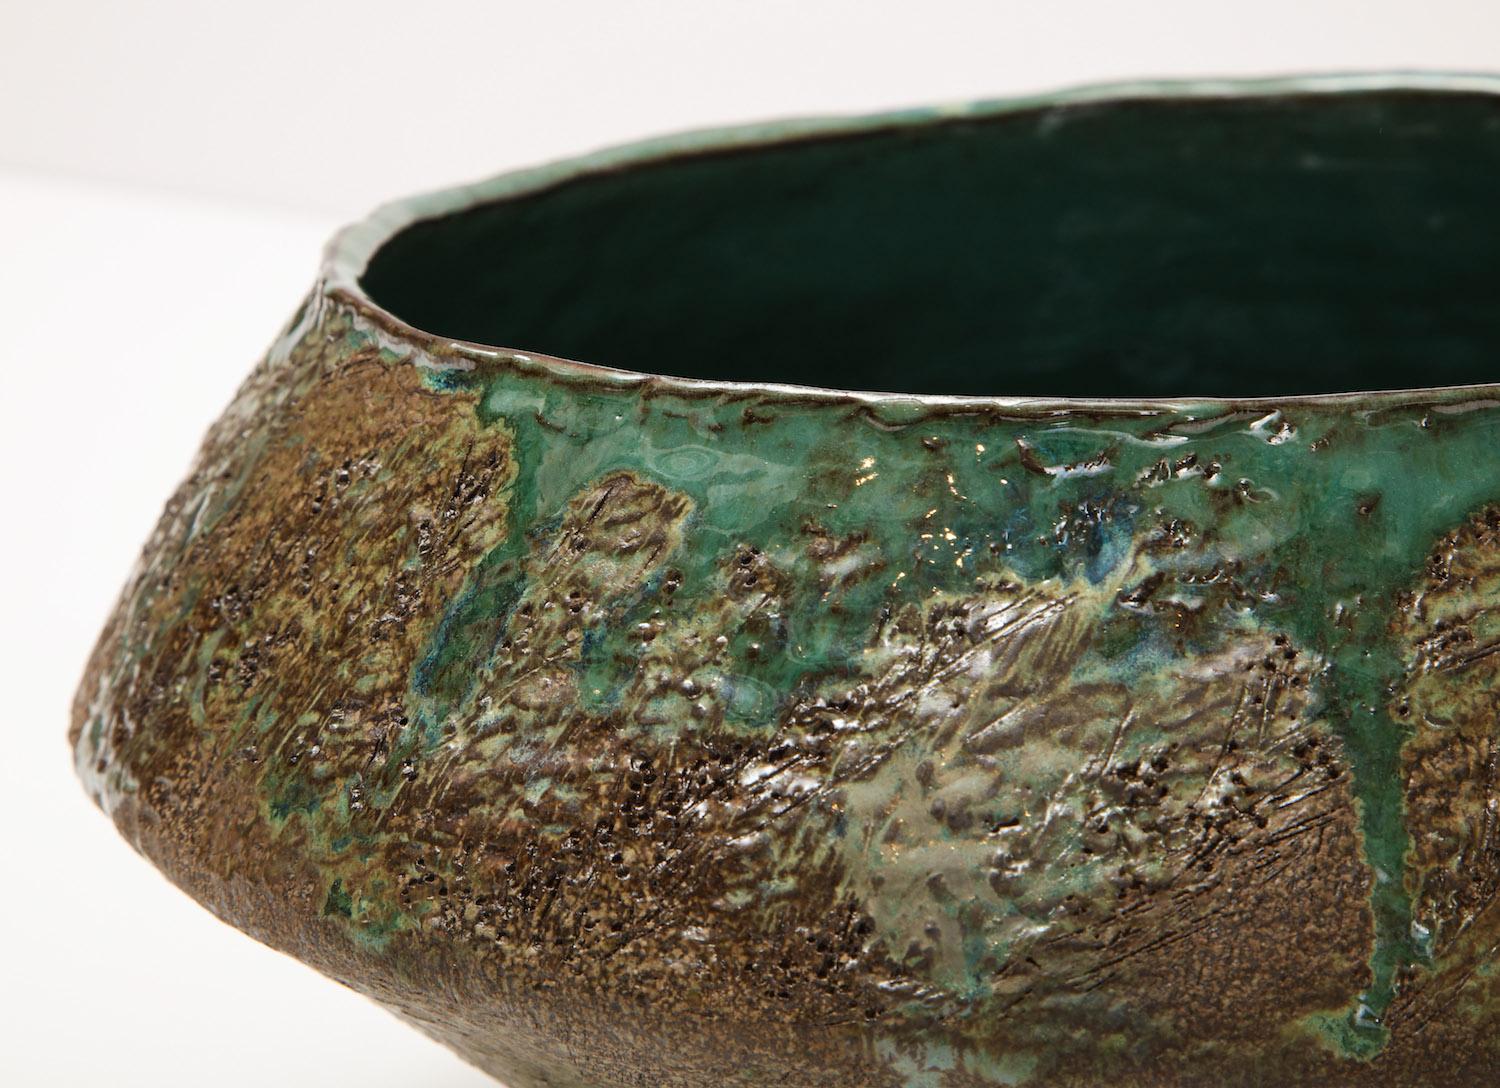 Contemporary Studio-Made Asymmetric Bowl by Dena Zemsky